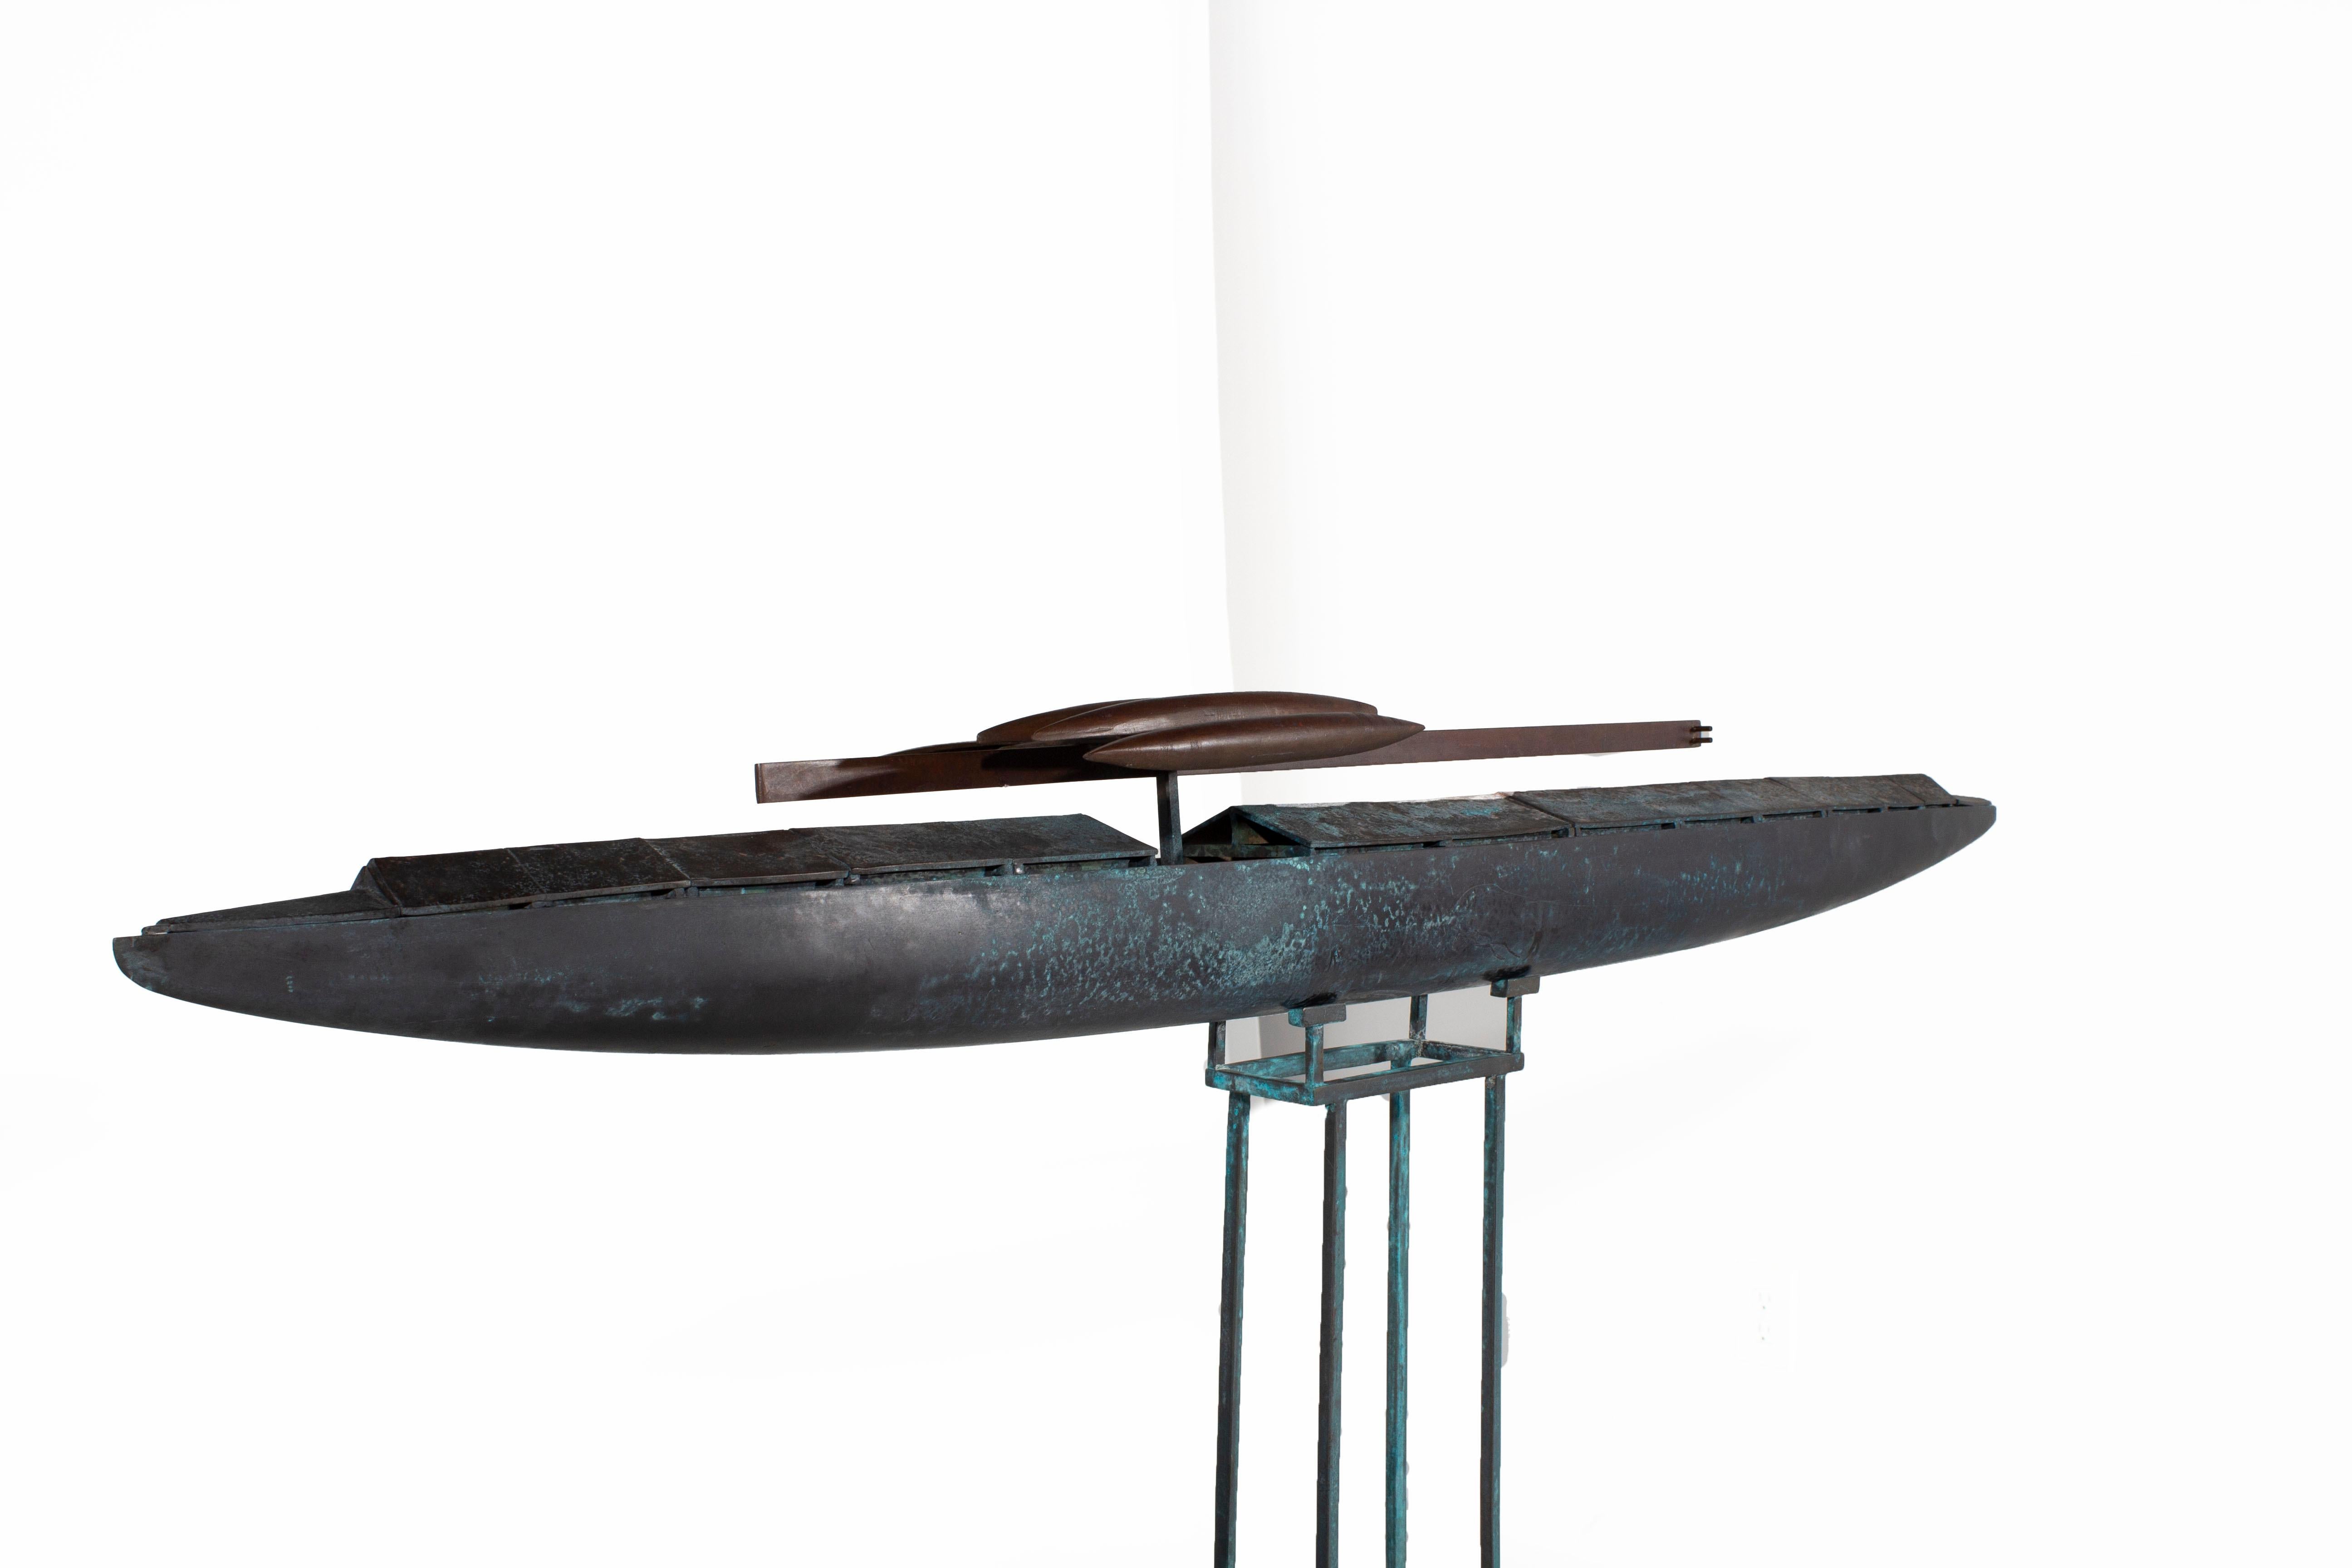 Sculpture de bateau fantastique en bronze coulé avec torpilles en fer et support en fer.

Ils sont sortis d'un studio d'artiste anonyme en cours de démontage sur la péninsule du Nord-Ouest. Ils sont tous en bronze coulé, à l'exception des moules en